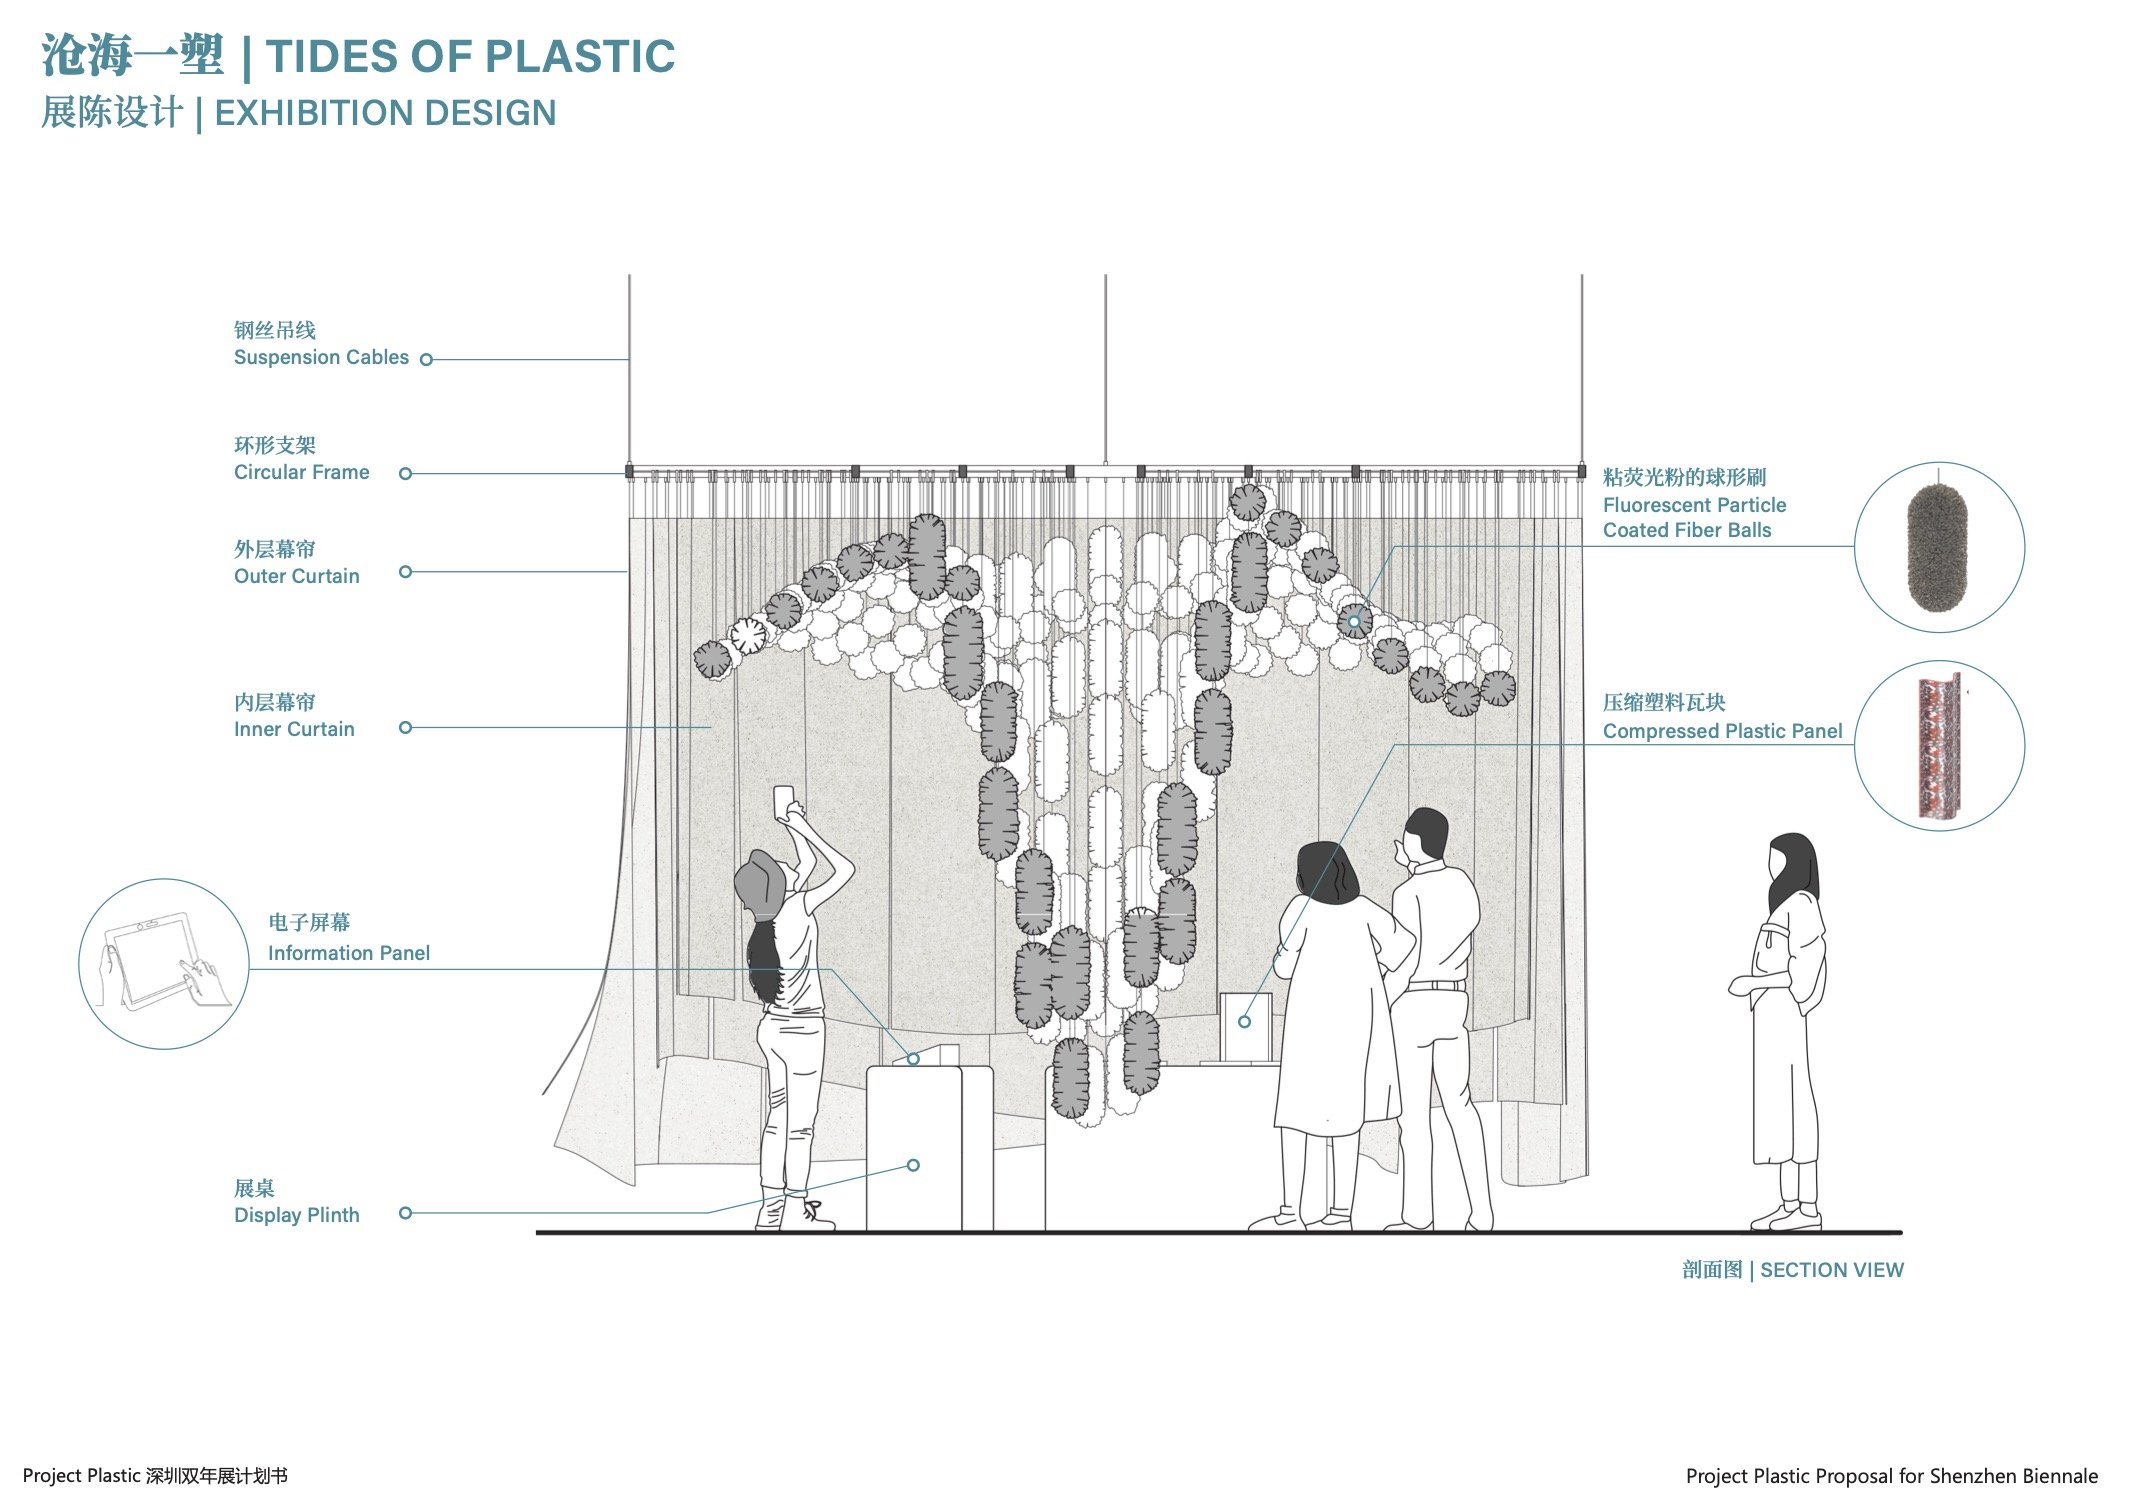 [FINAL] Project Plastic_Shenzhen Biennale9.jpg